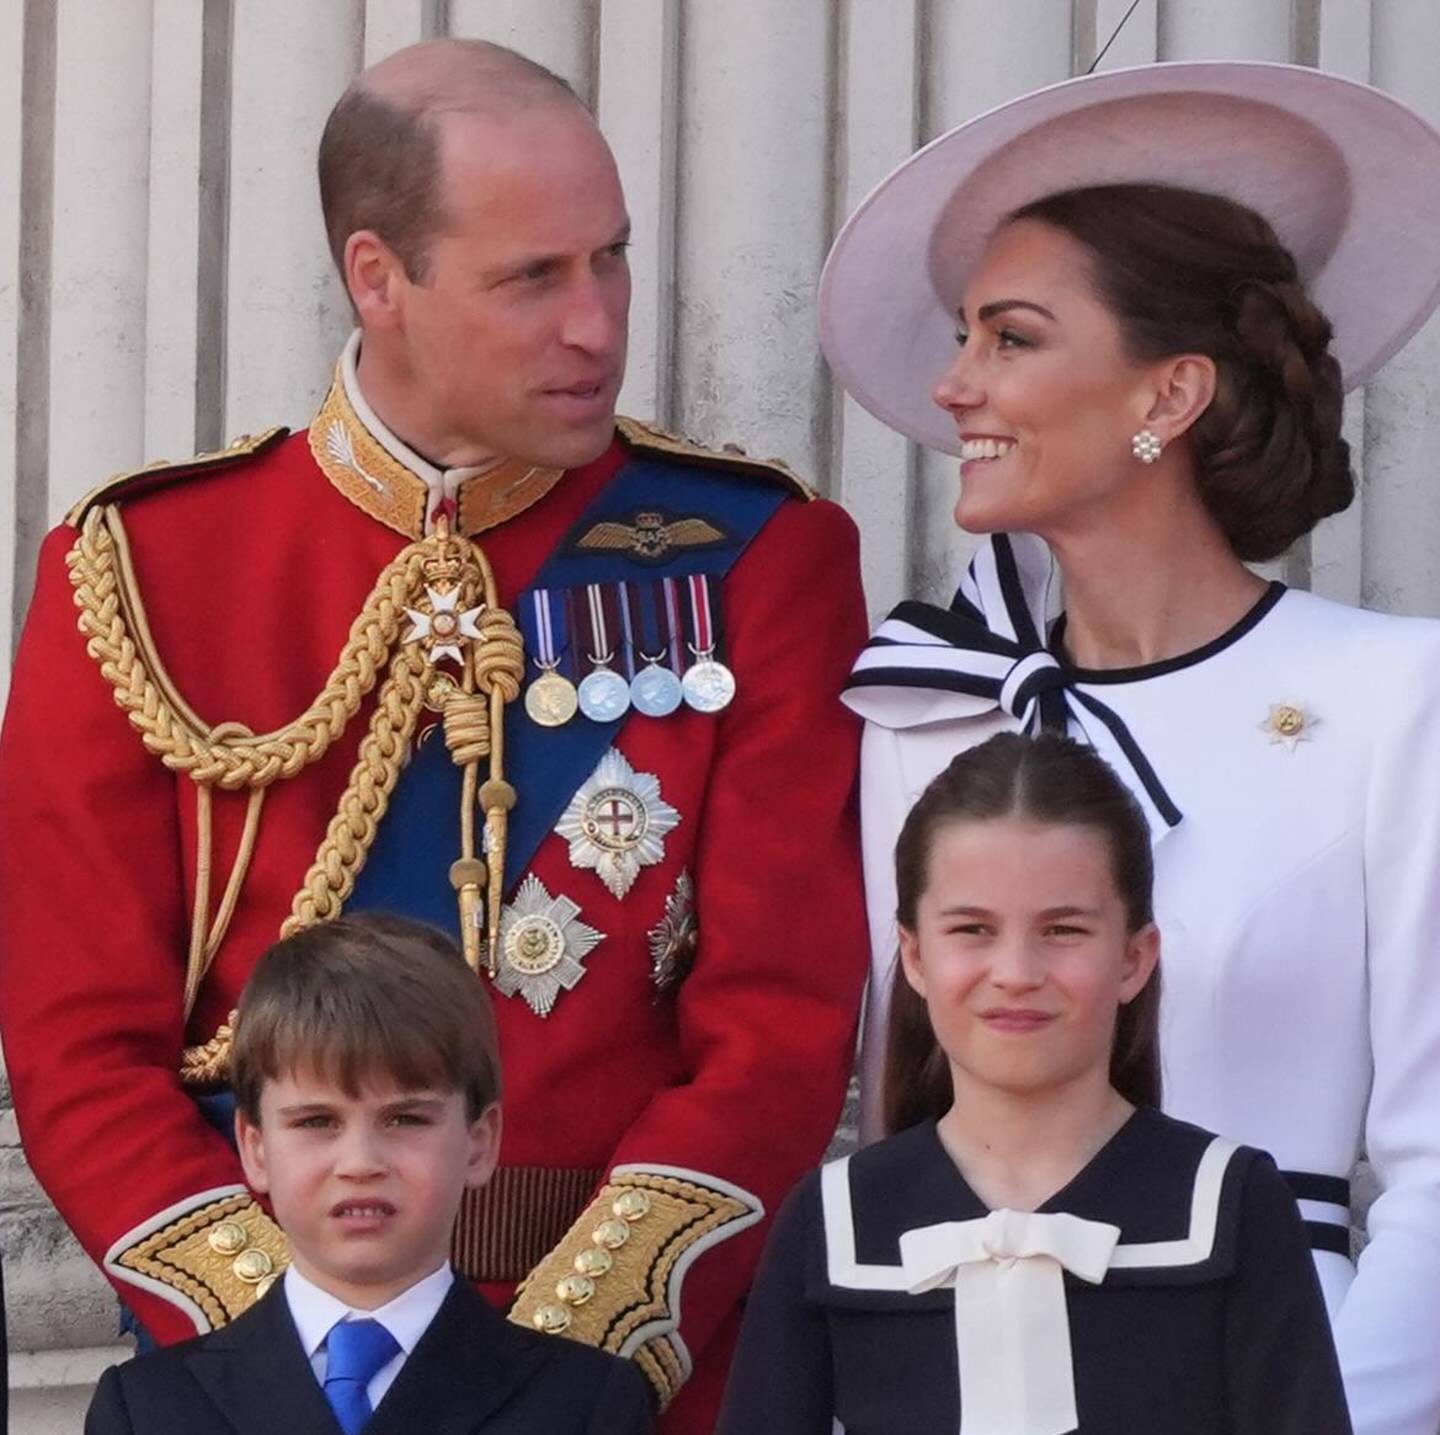 Kate Middleton estuvo en el desfile por el cumpleaños del rey Carlos III con su esposo y tres hijos. En la primera fila aparece el príncipe William y la princesa Kate Middleton; en la segunda fila el príncipe Louis y la princesa Charlotte.